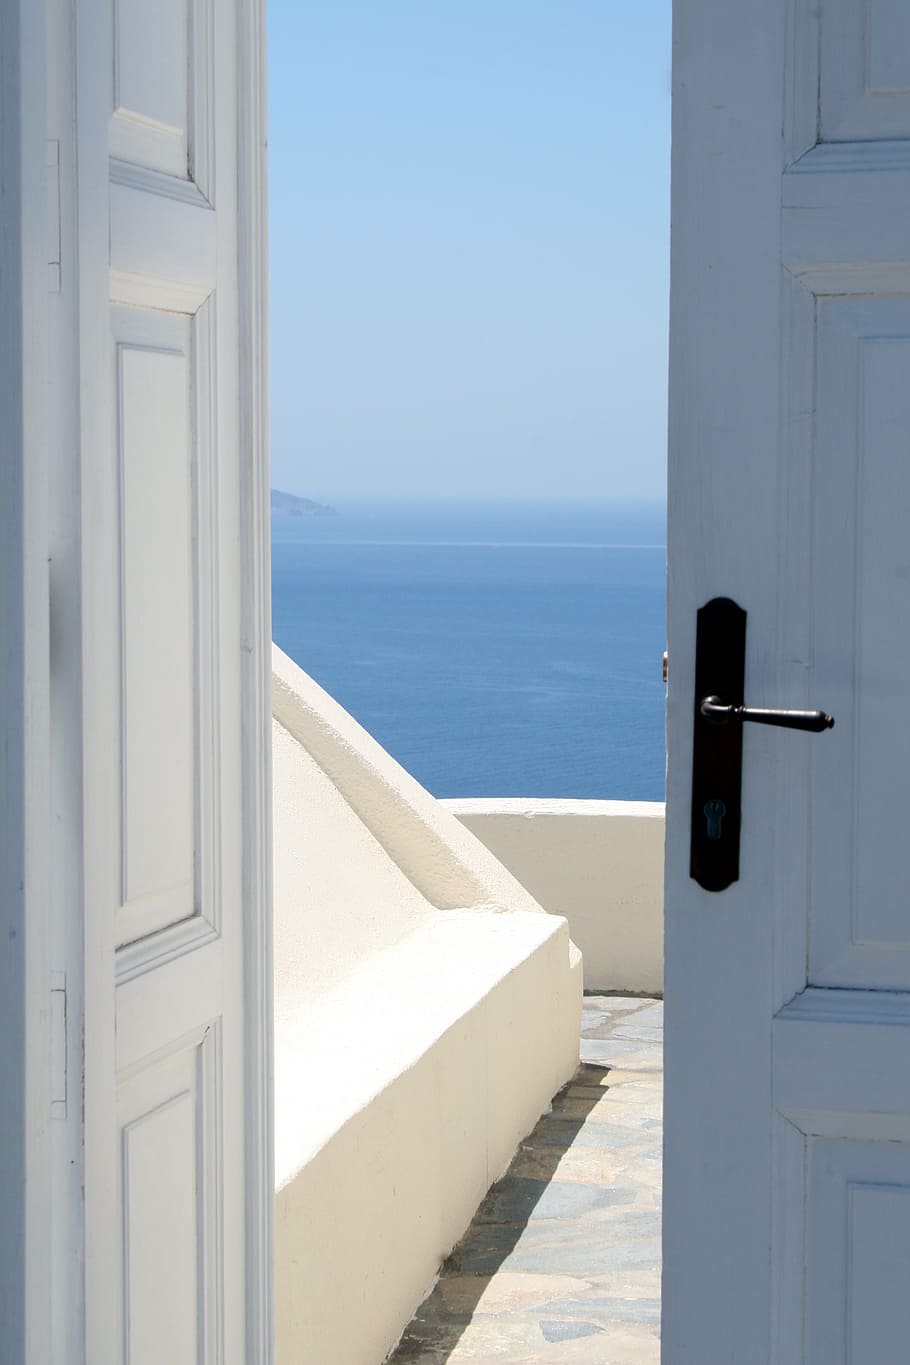 slightly, open, white, door, overlooking, body, water, entry, sea, santorini